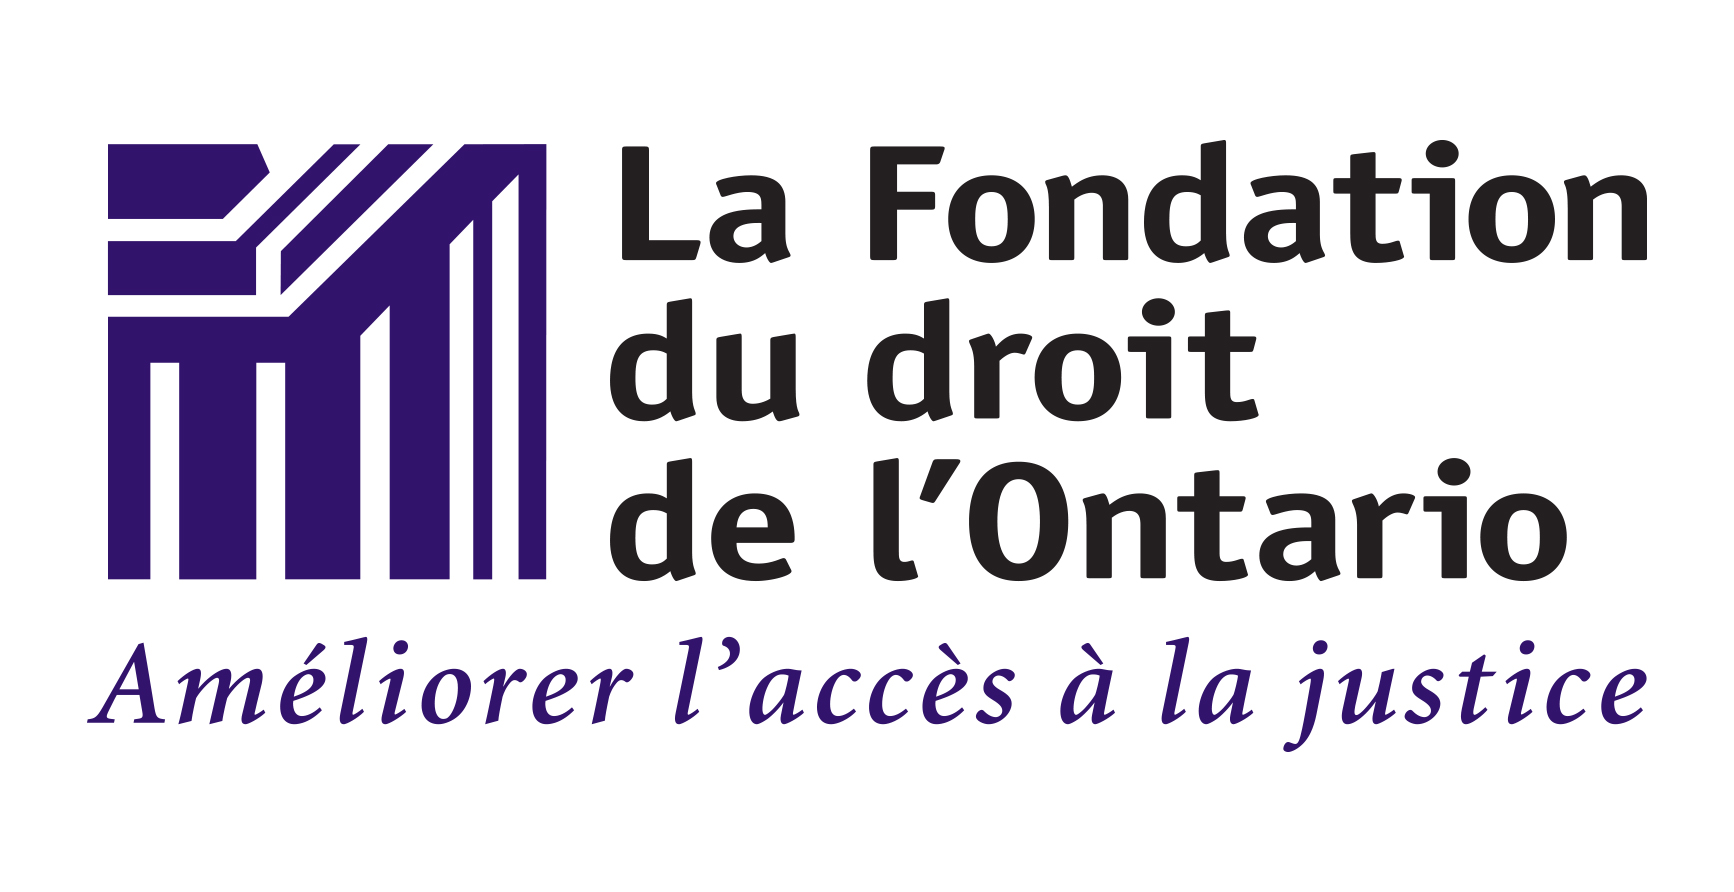 Logo: La Fondation du droit de l'Ontario. 